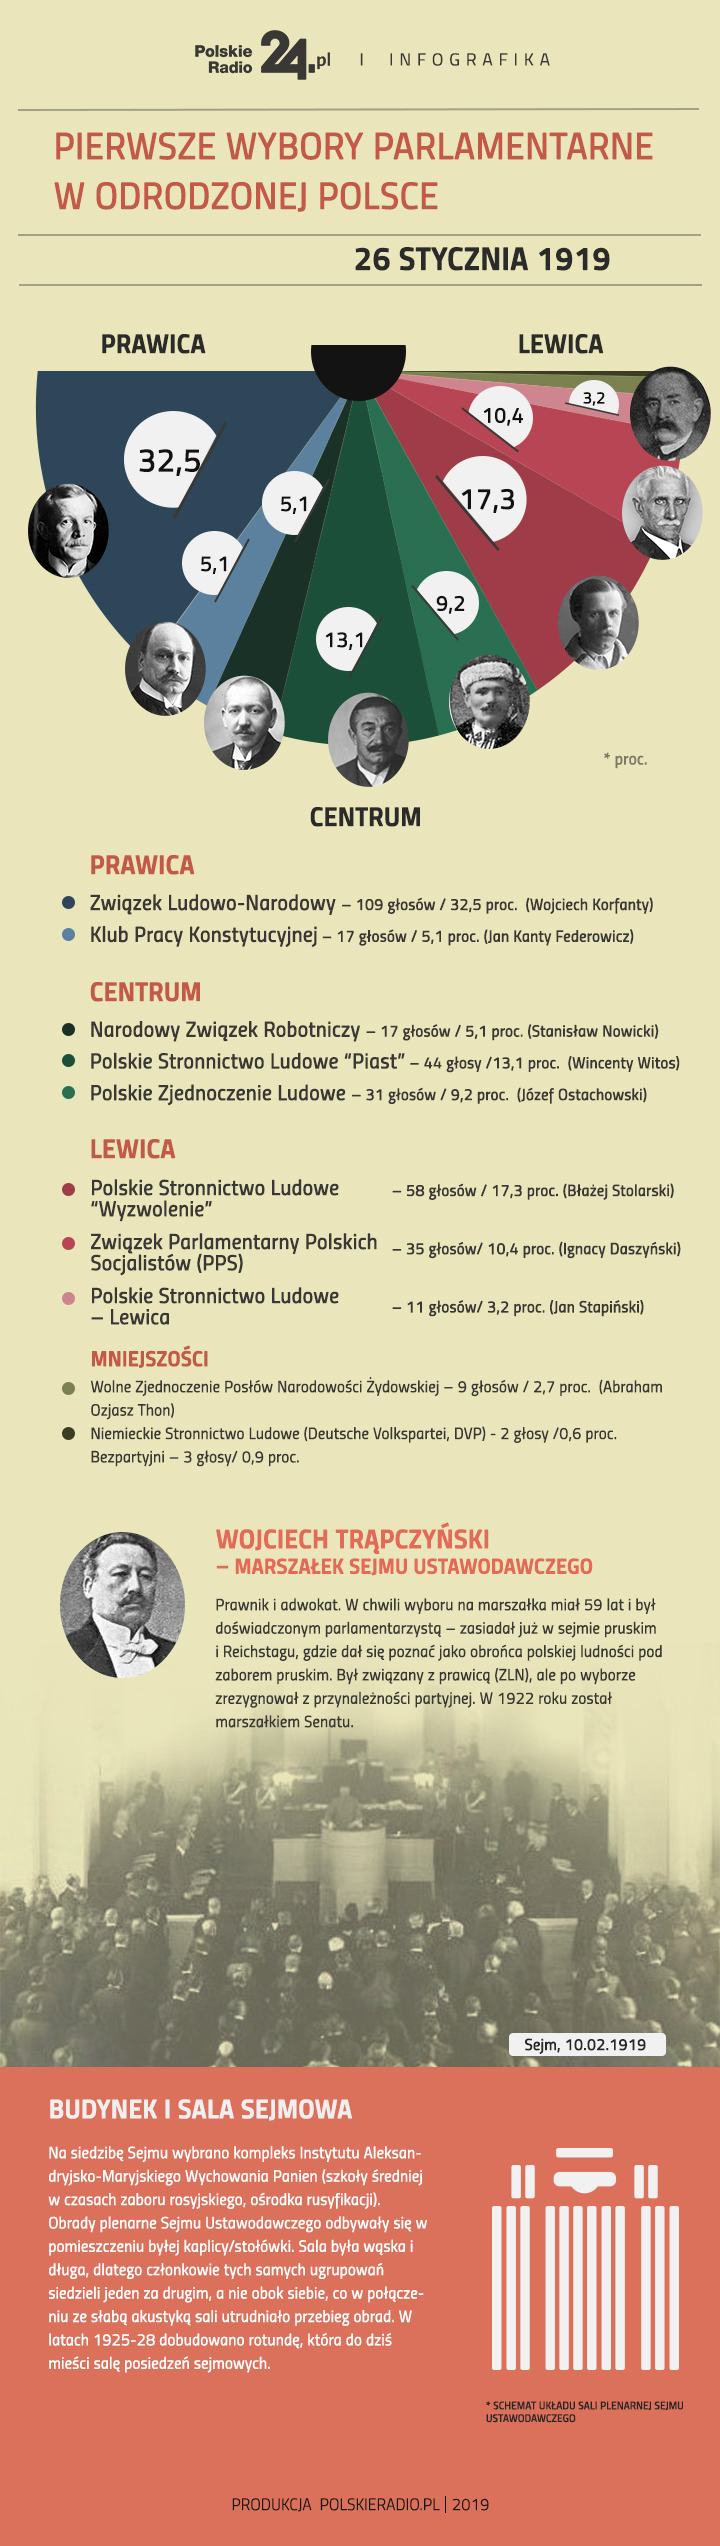 Podział głosów w Sejmie Ustawodawczym. Infografika: Polskie Radio/Bartłomiej Makowski (red.)/Łukasz Haponiuk (graf.)